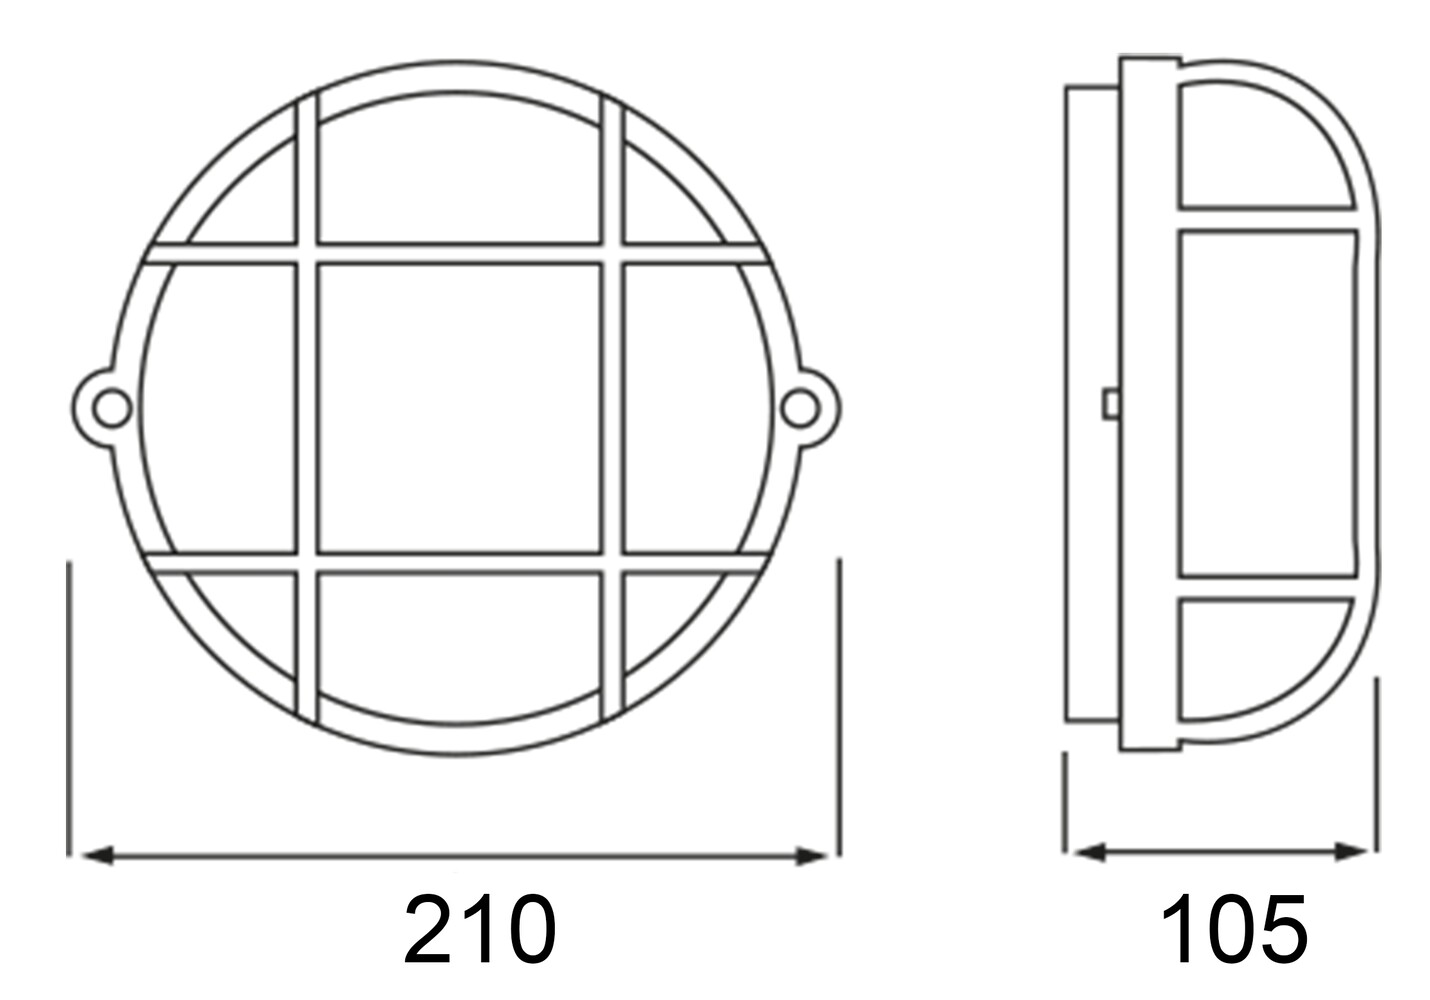 Stilvoller rund geformter Deckenstrahler von Deko-Light in modernem Grau